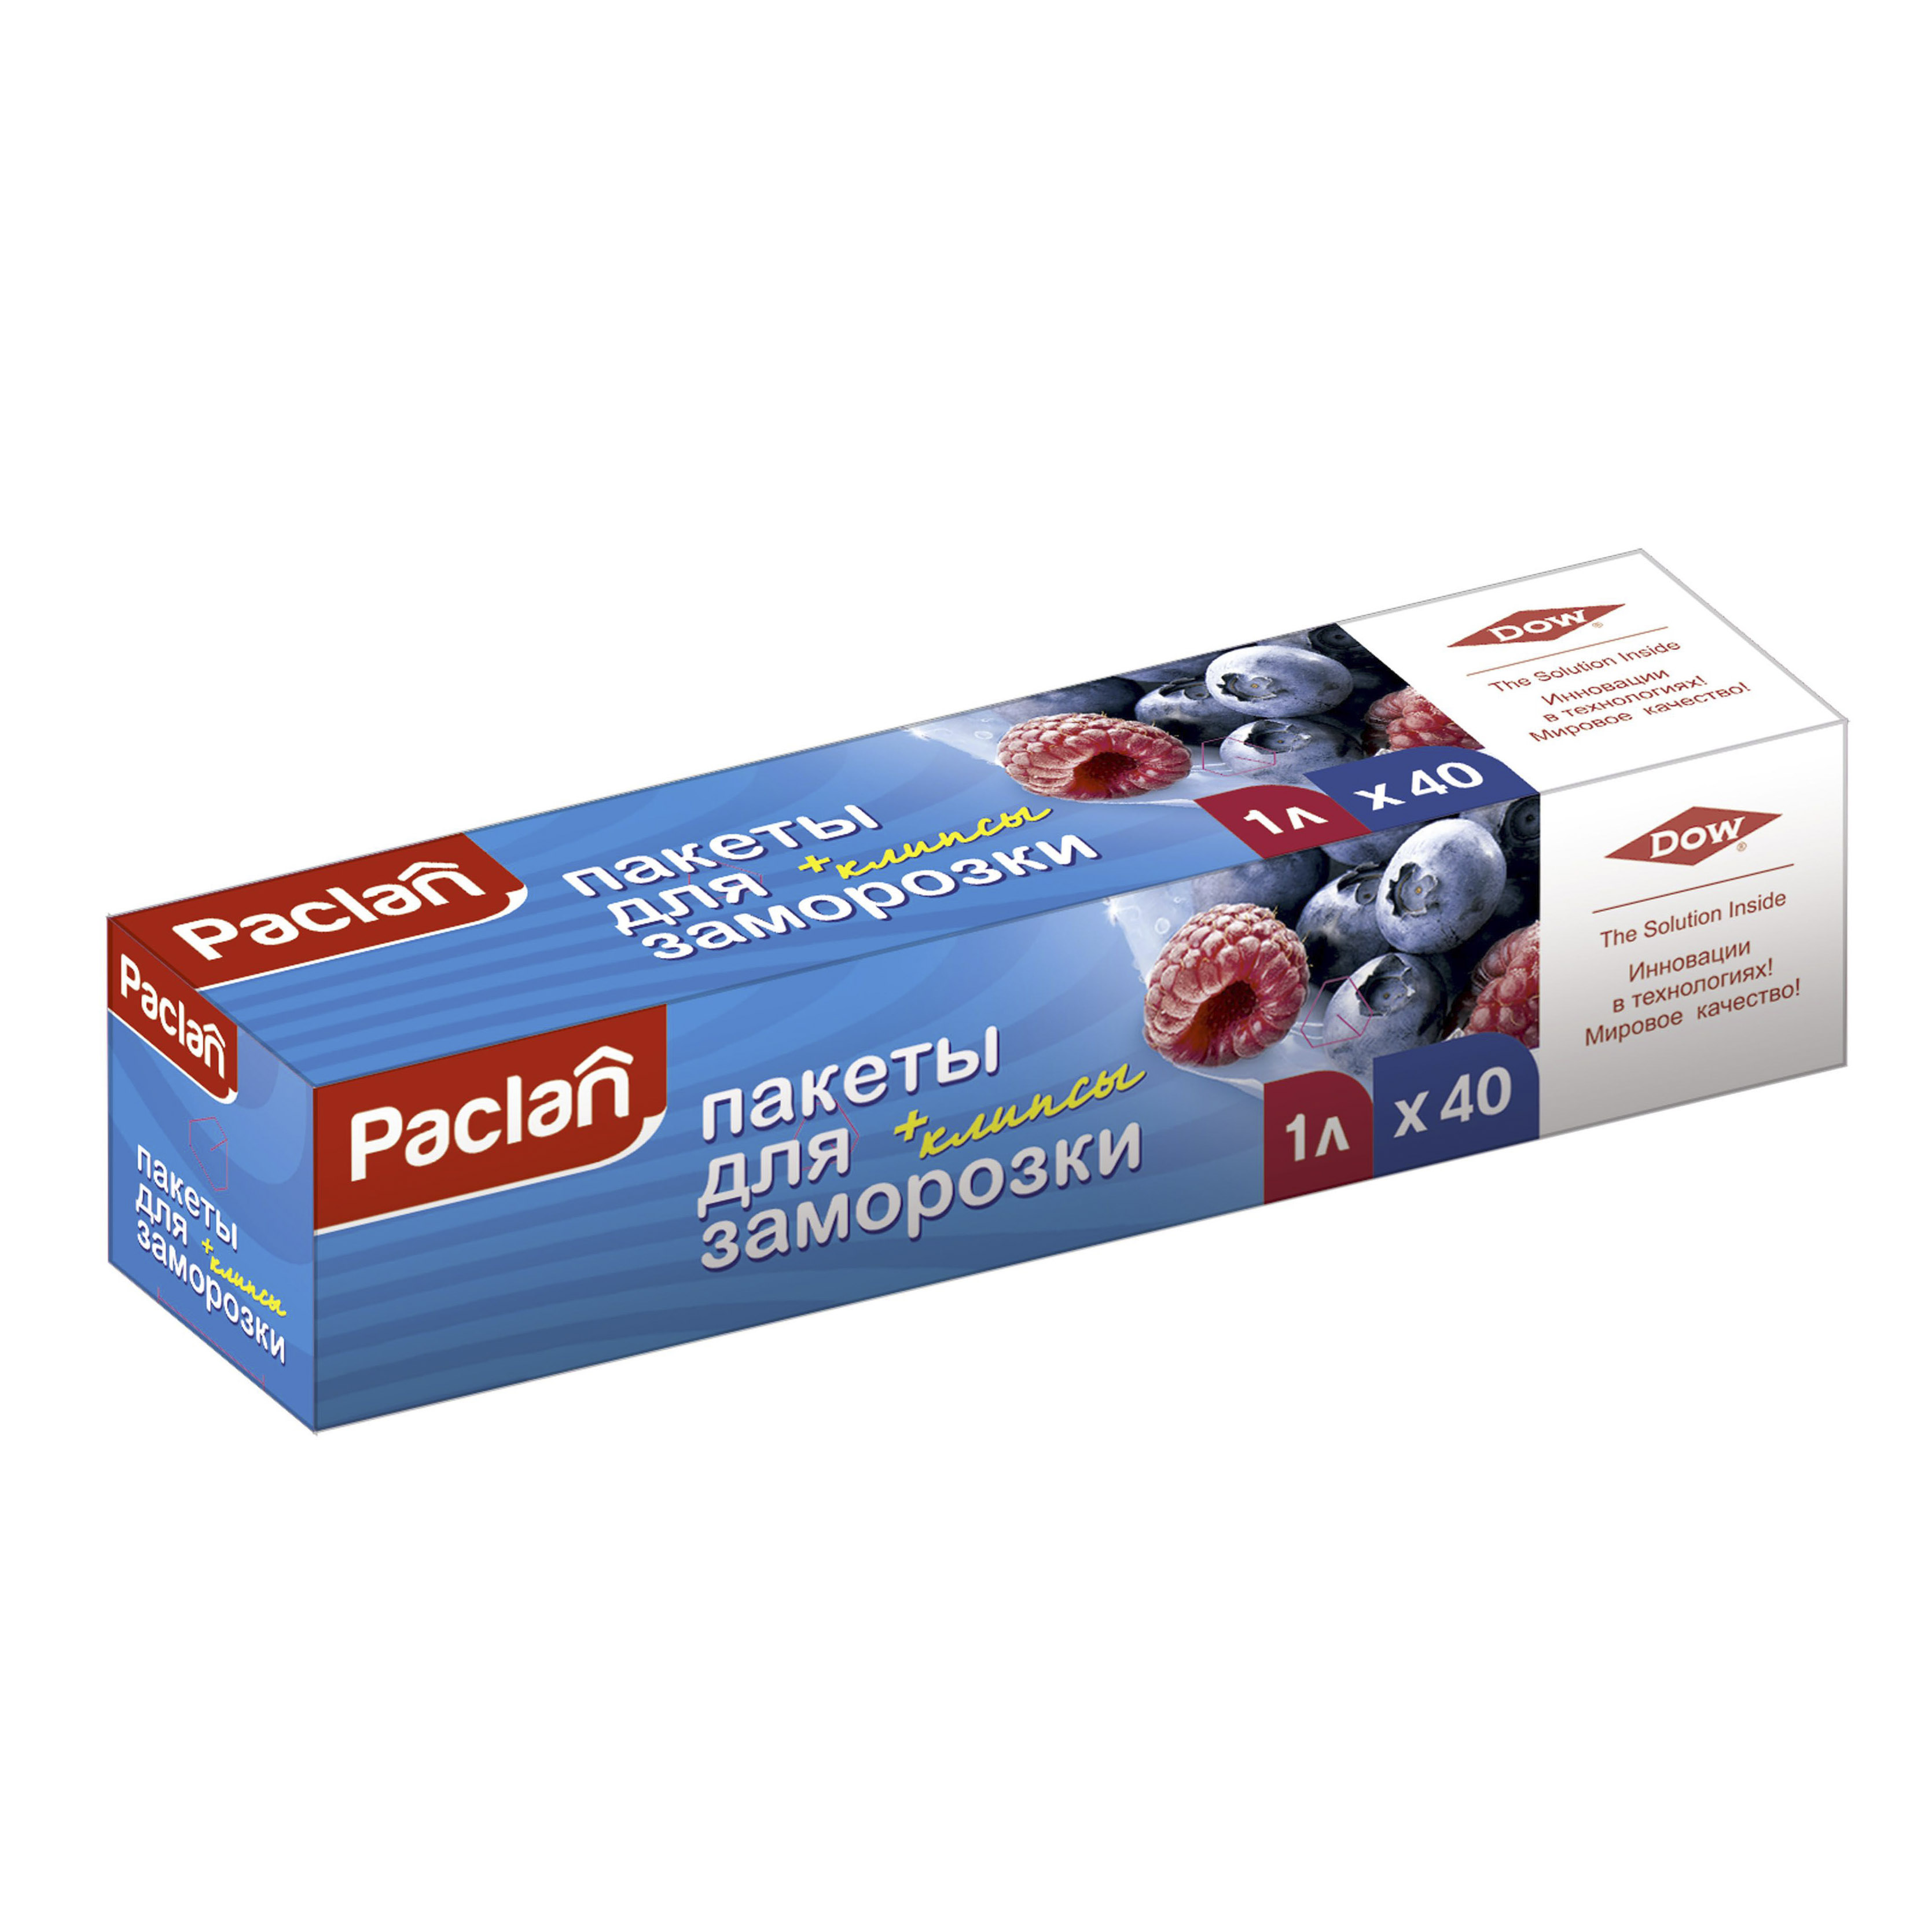 Пакеты Paclan для хранения и замораживания продуктов 1 л 40 шт, цвет прозрачный